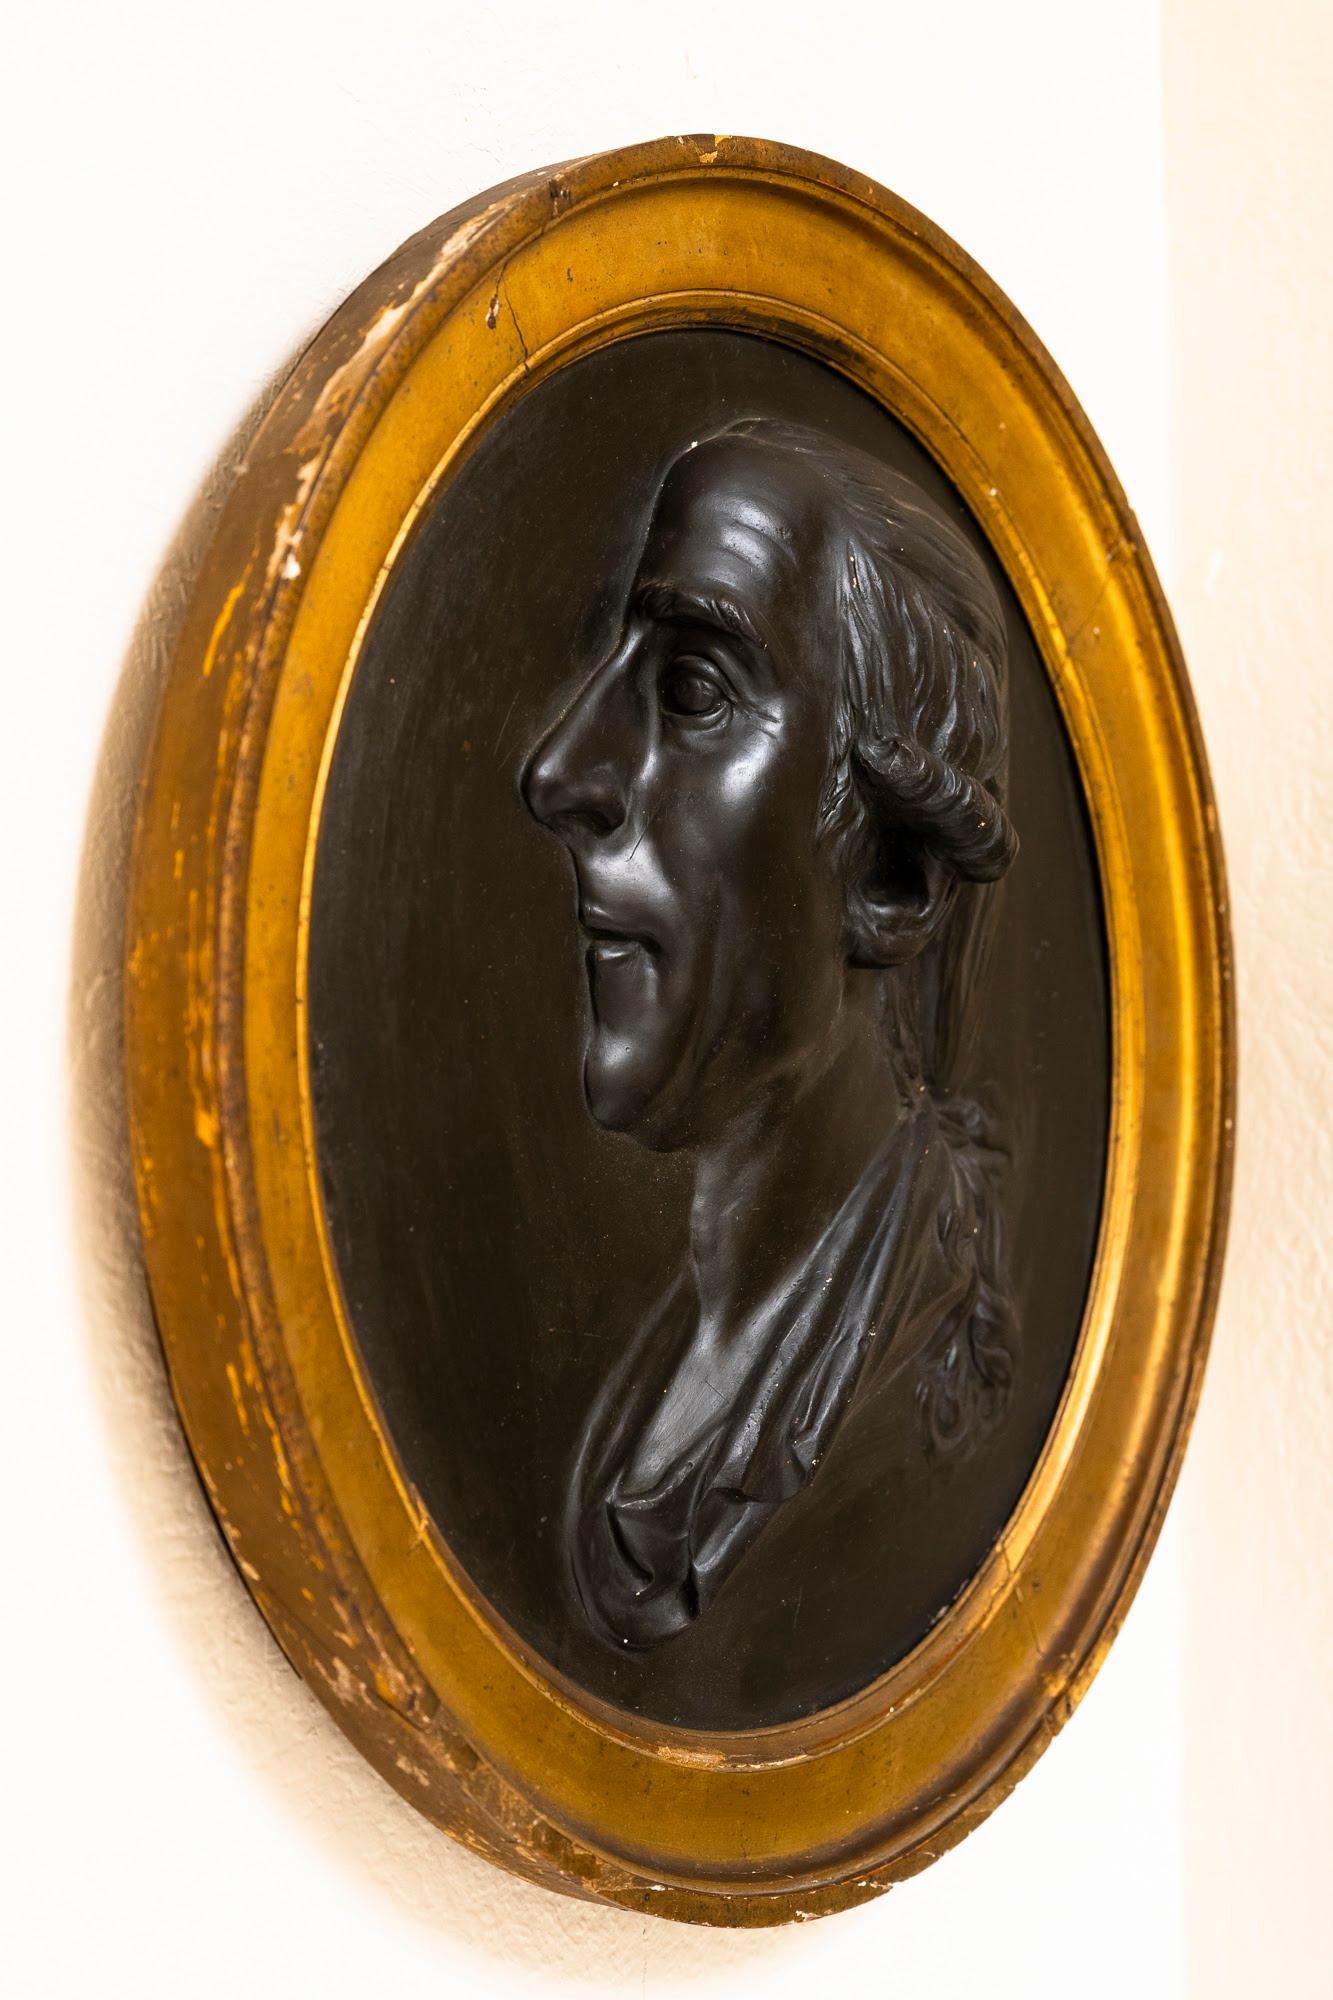 Ce portrait en buste en relief d'un noble français est monté dans le cadre doré d'origine, bien que l'identité du sujet et de l'artiste reste un mystère. Magnifiquement sculpté, le buste est en bon état, mais le cadre en bois doré a subi quelques